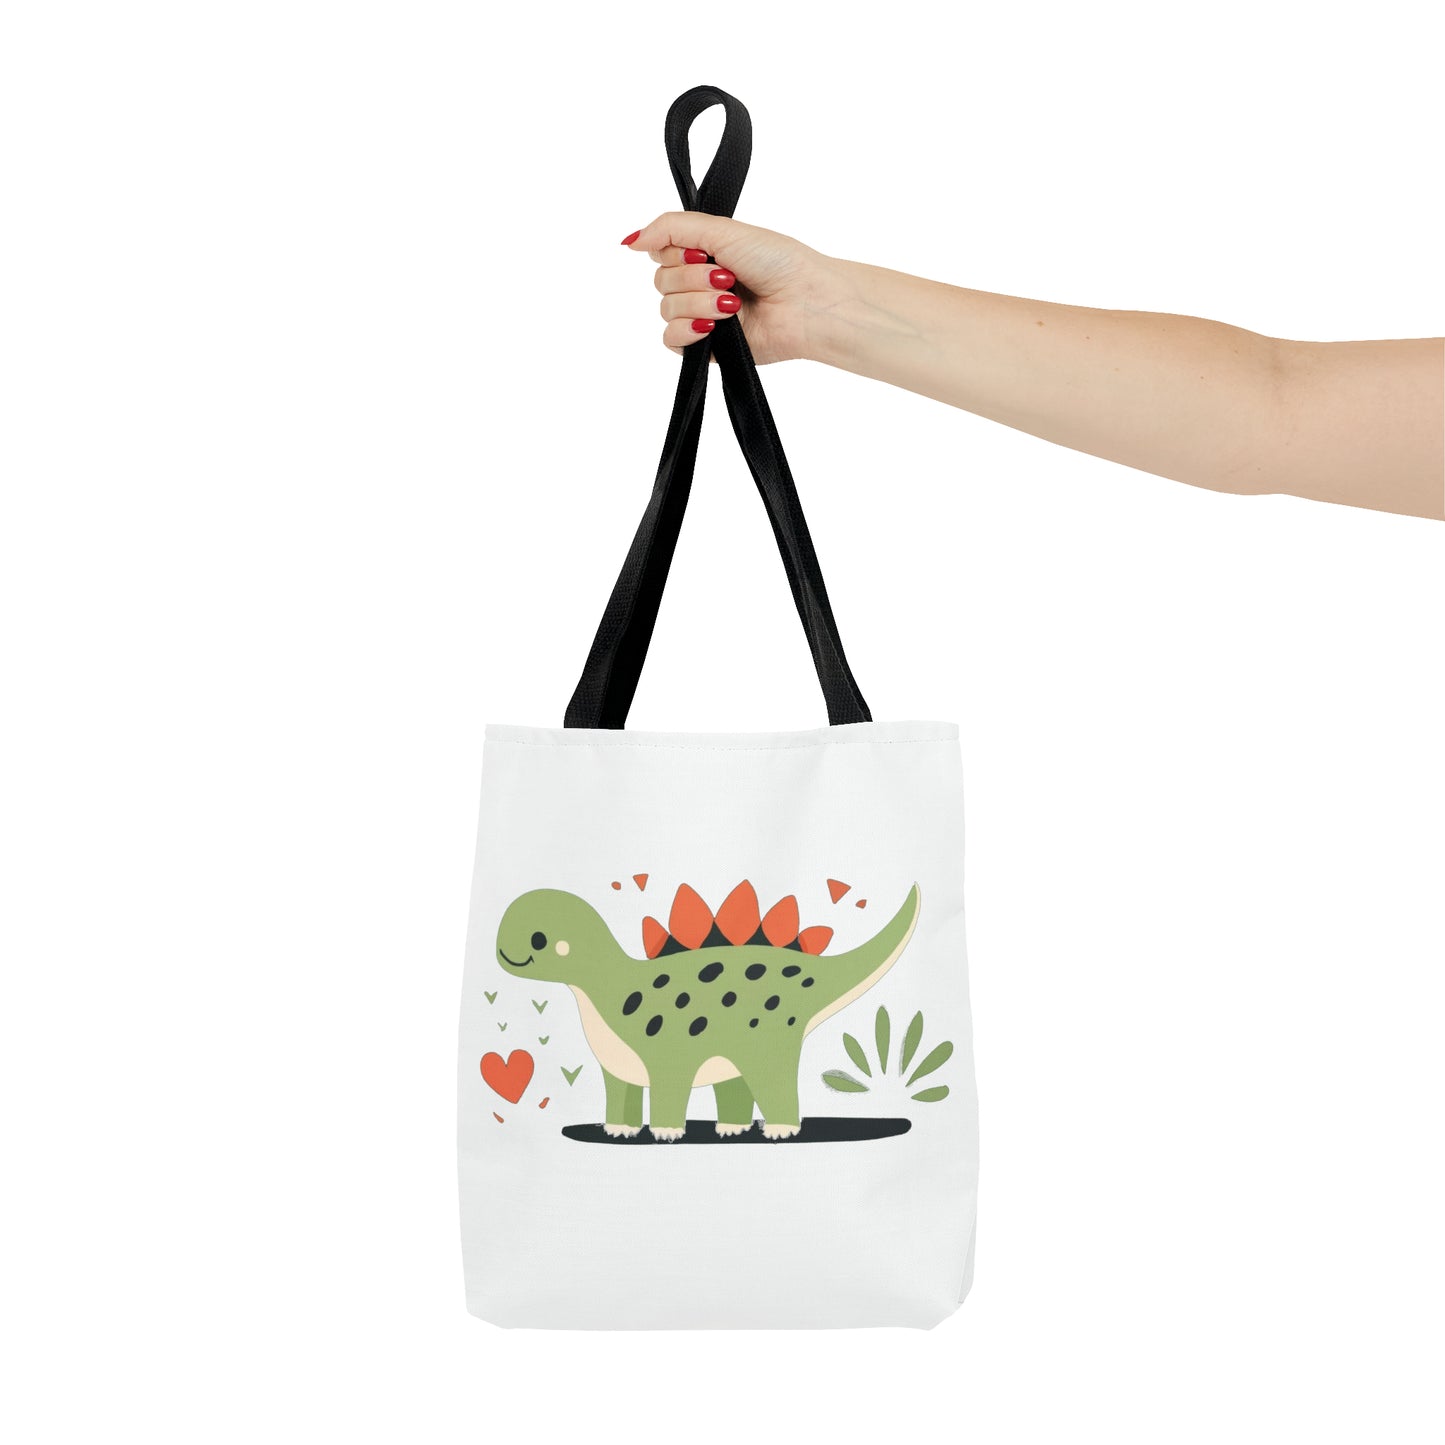 Stegosaurus Hugs: Adorable Tote Bag